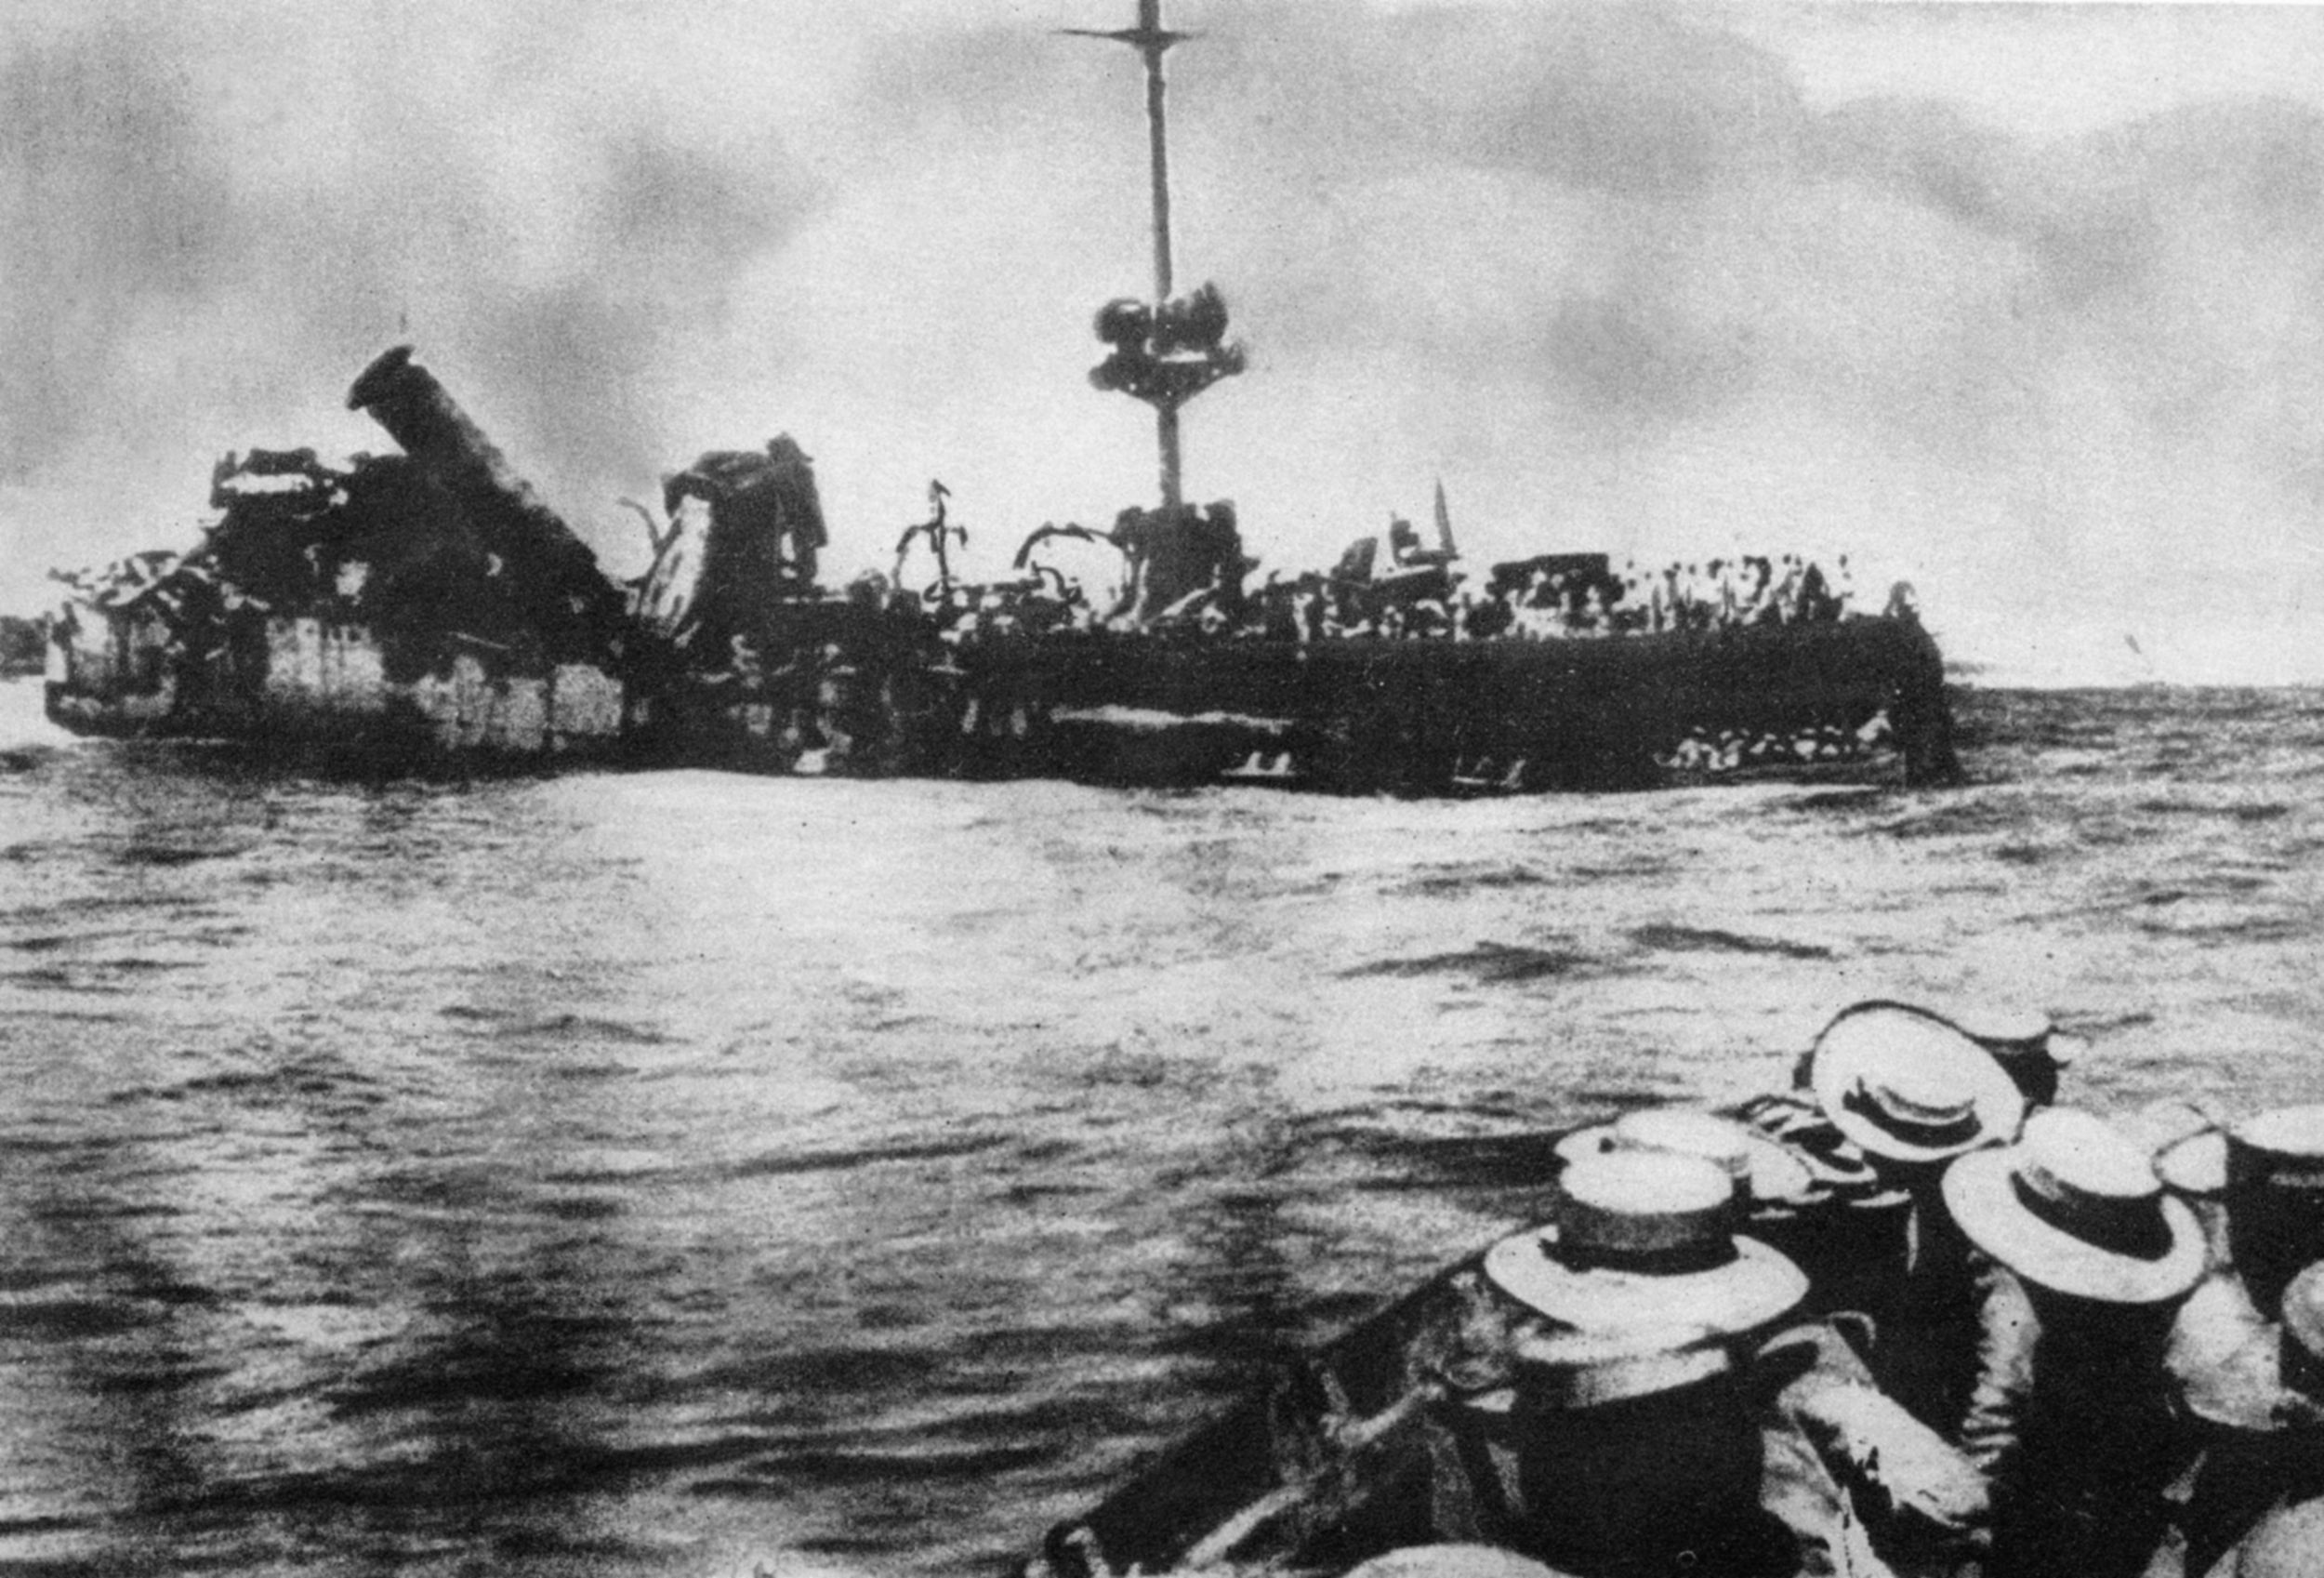 German cruiser Emden was destroyed by British fire at Jutland.